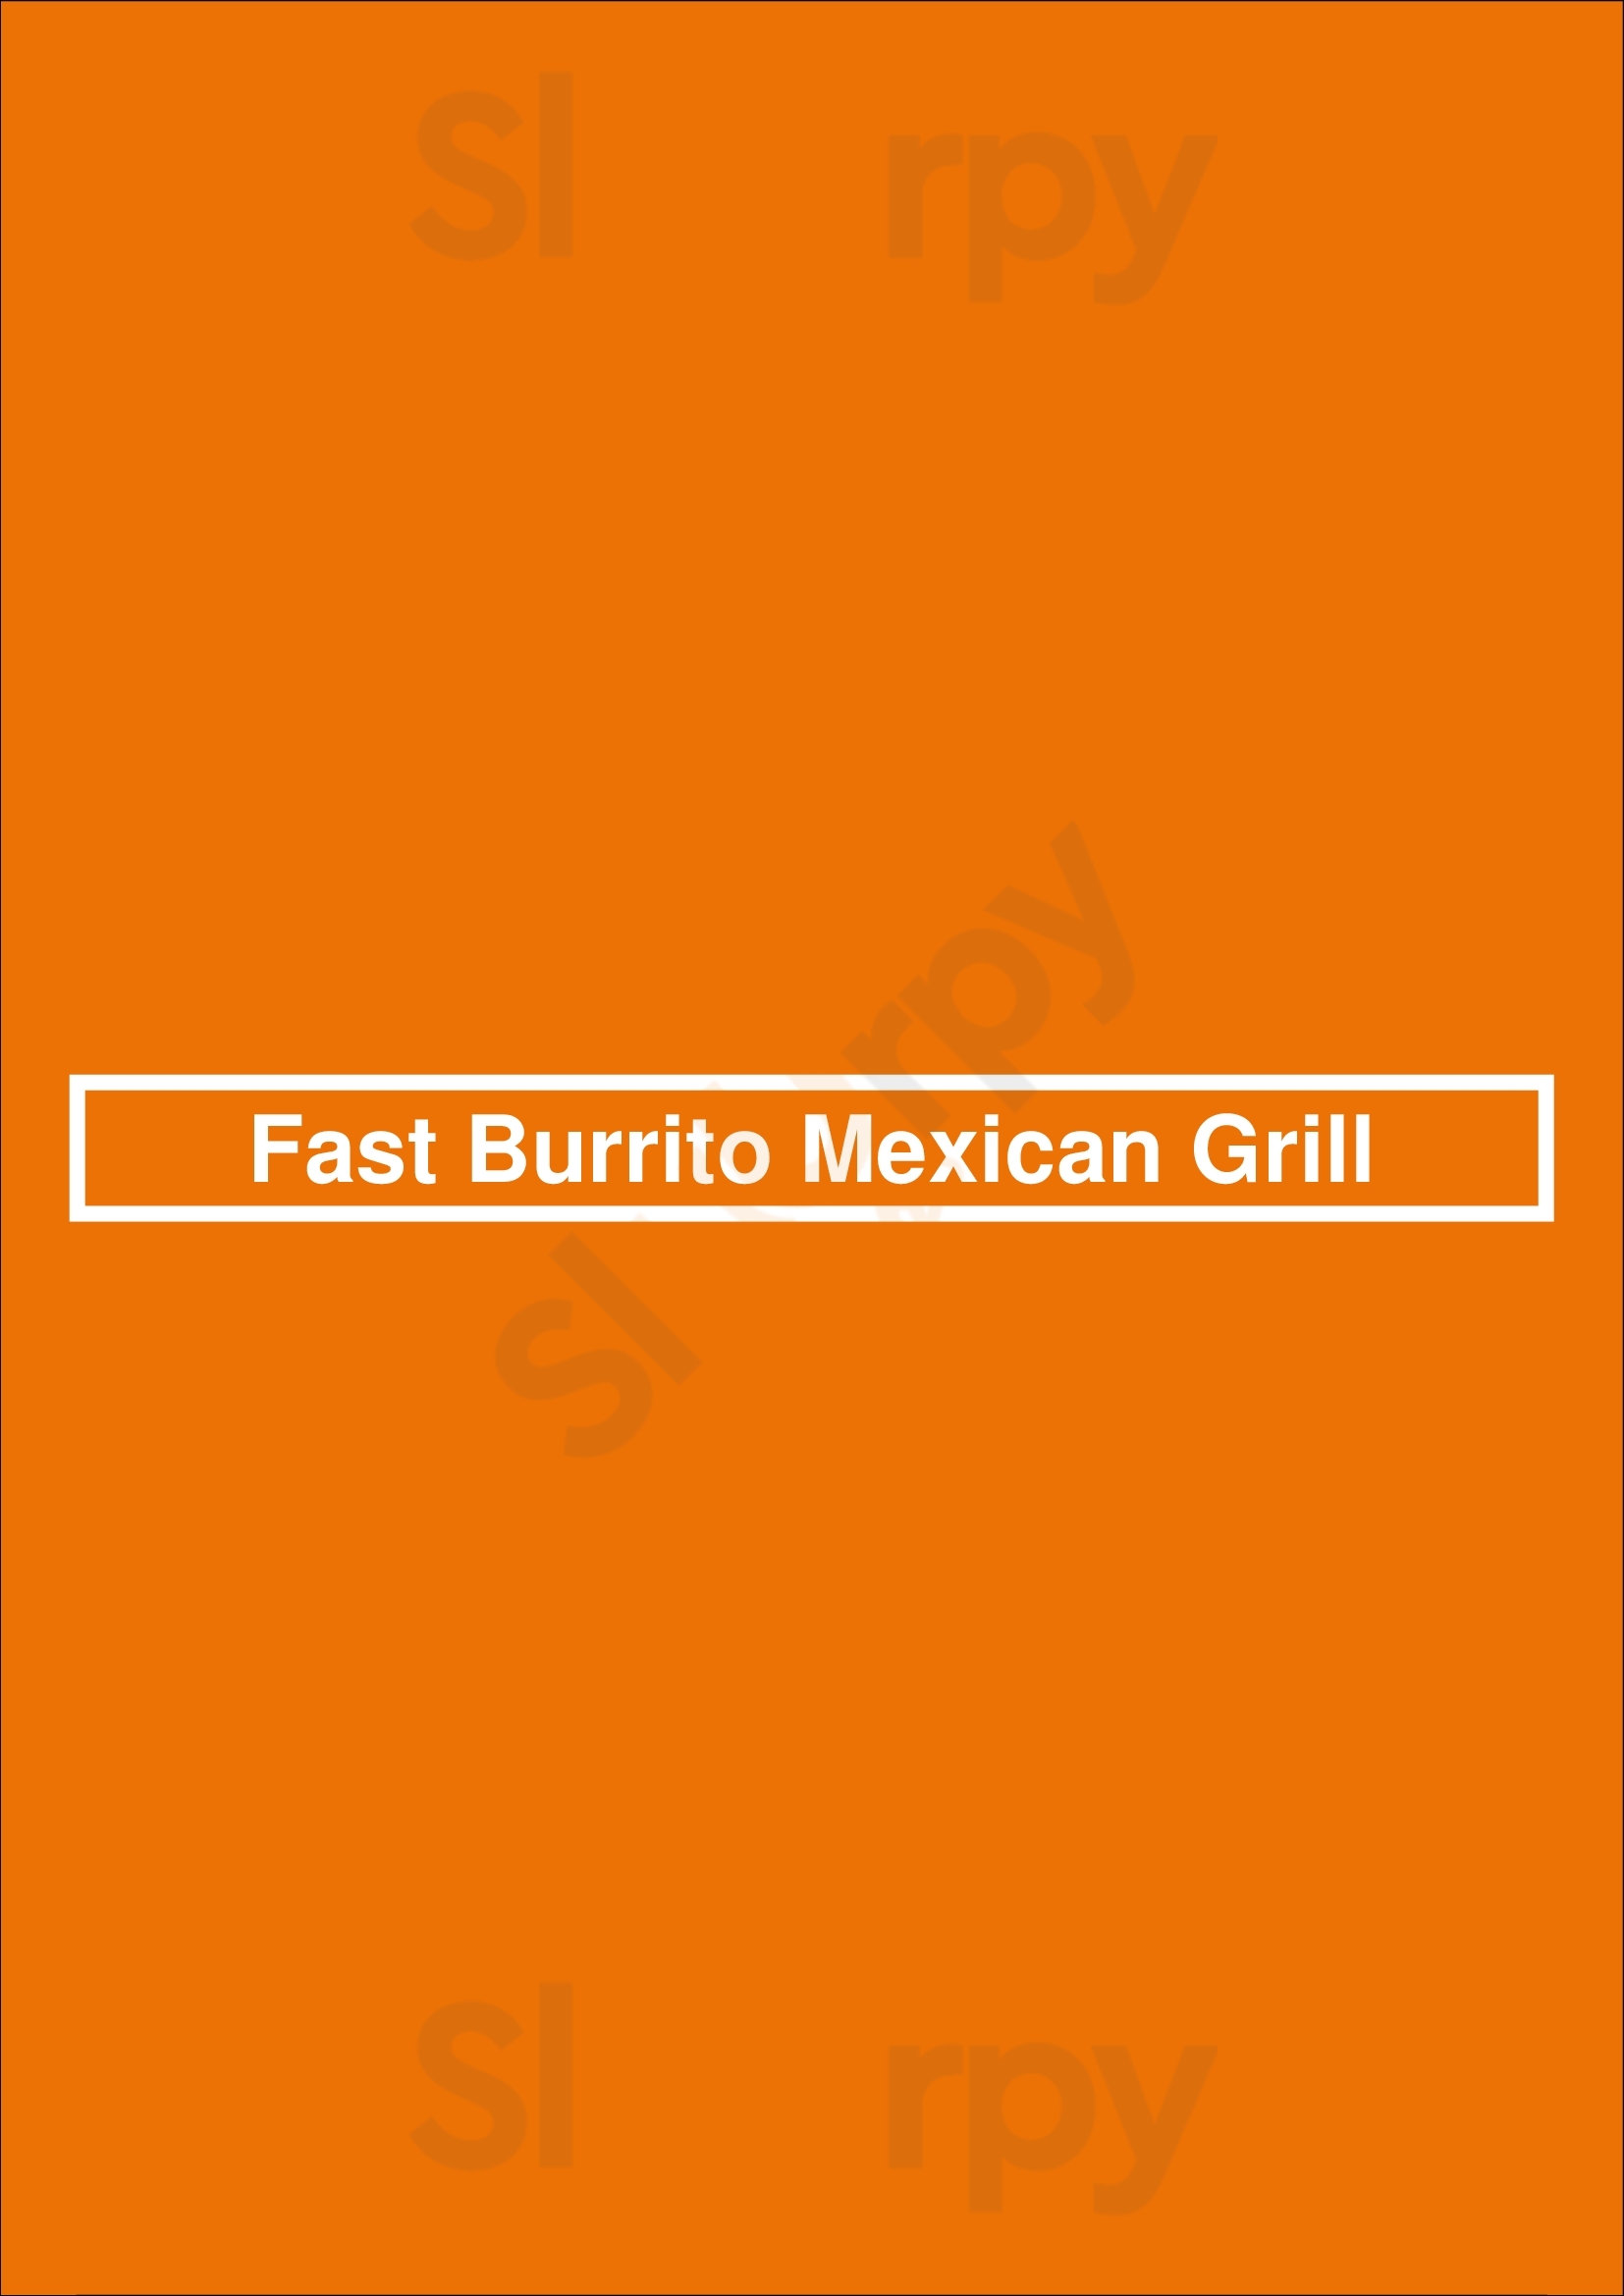 Fast Burrito Mexican Grill Indianapolis Menu - 1